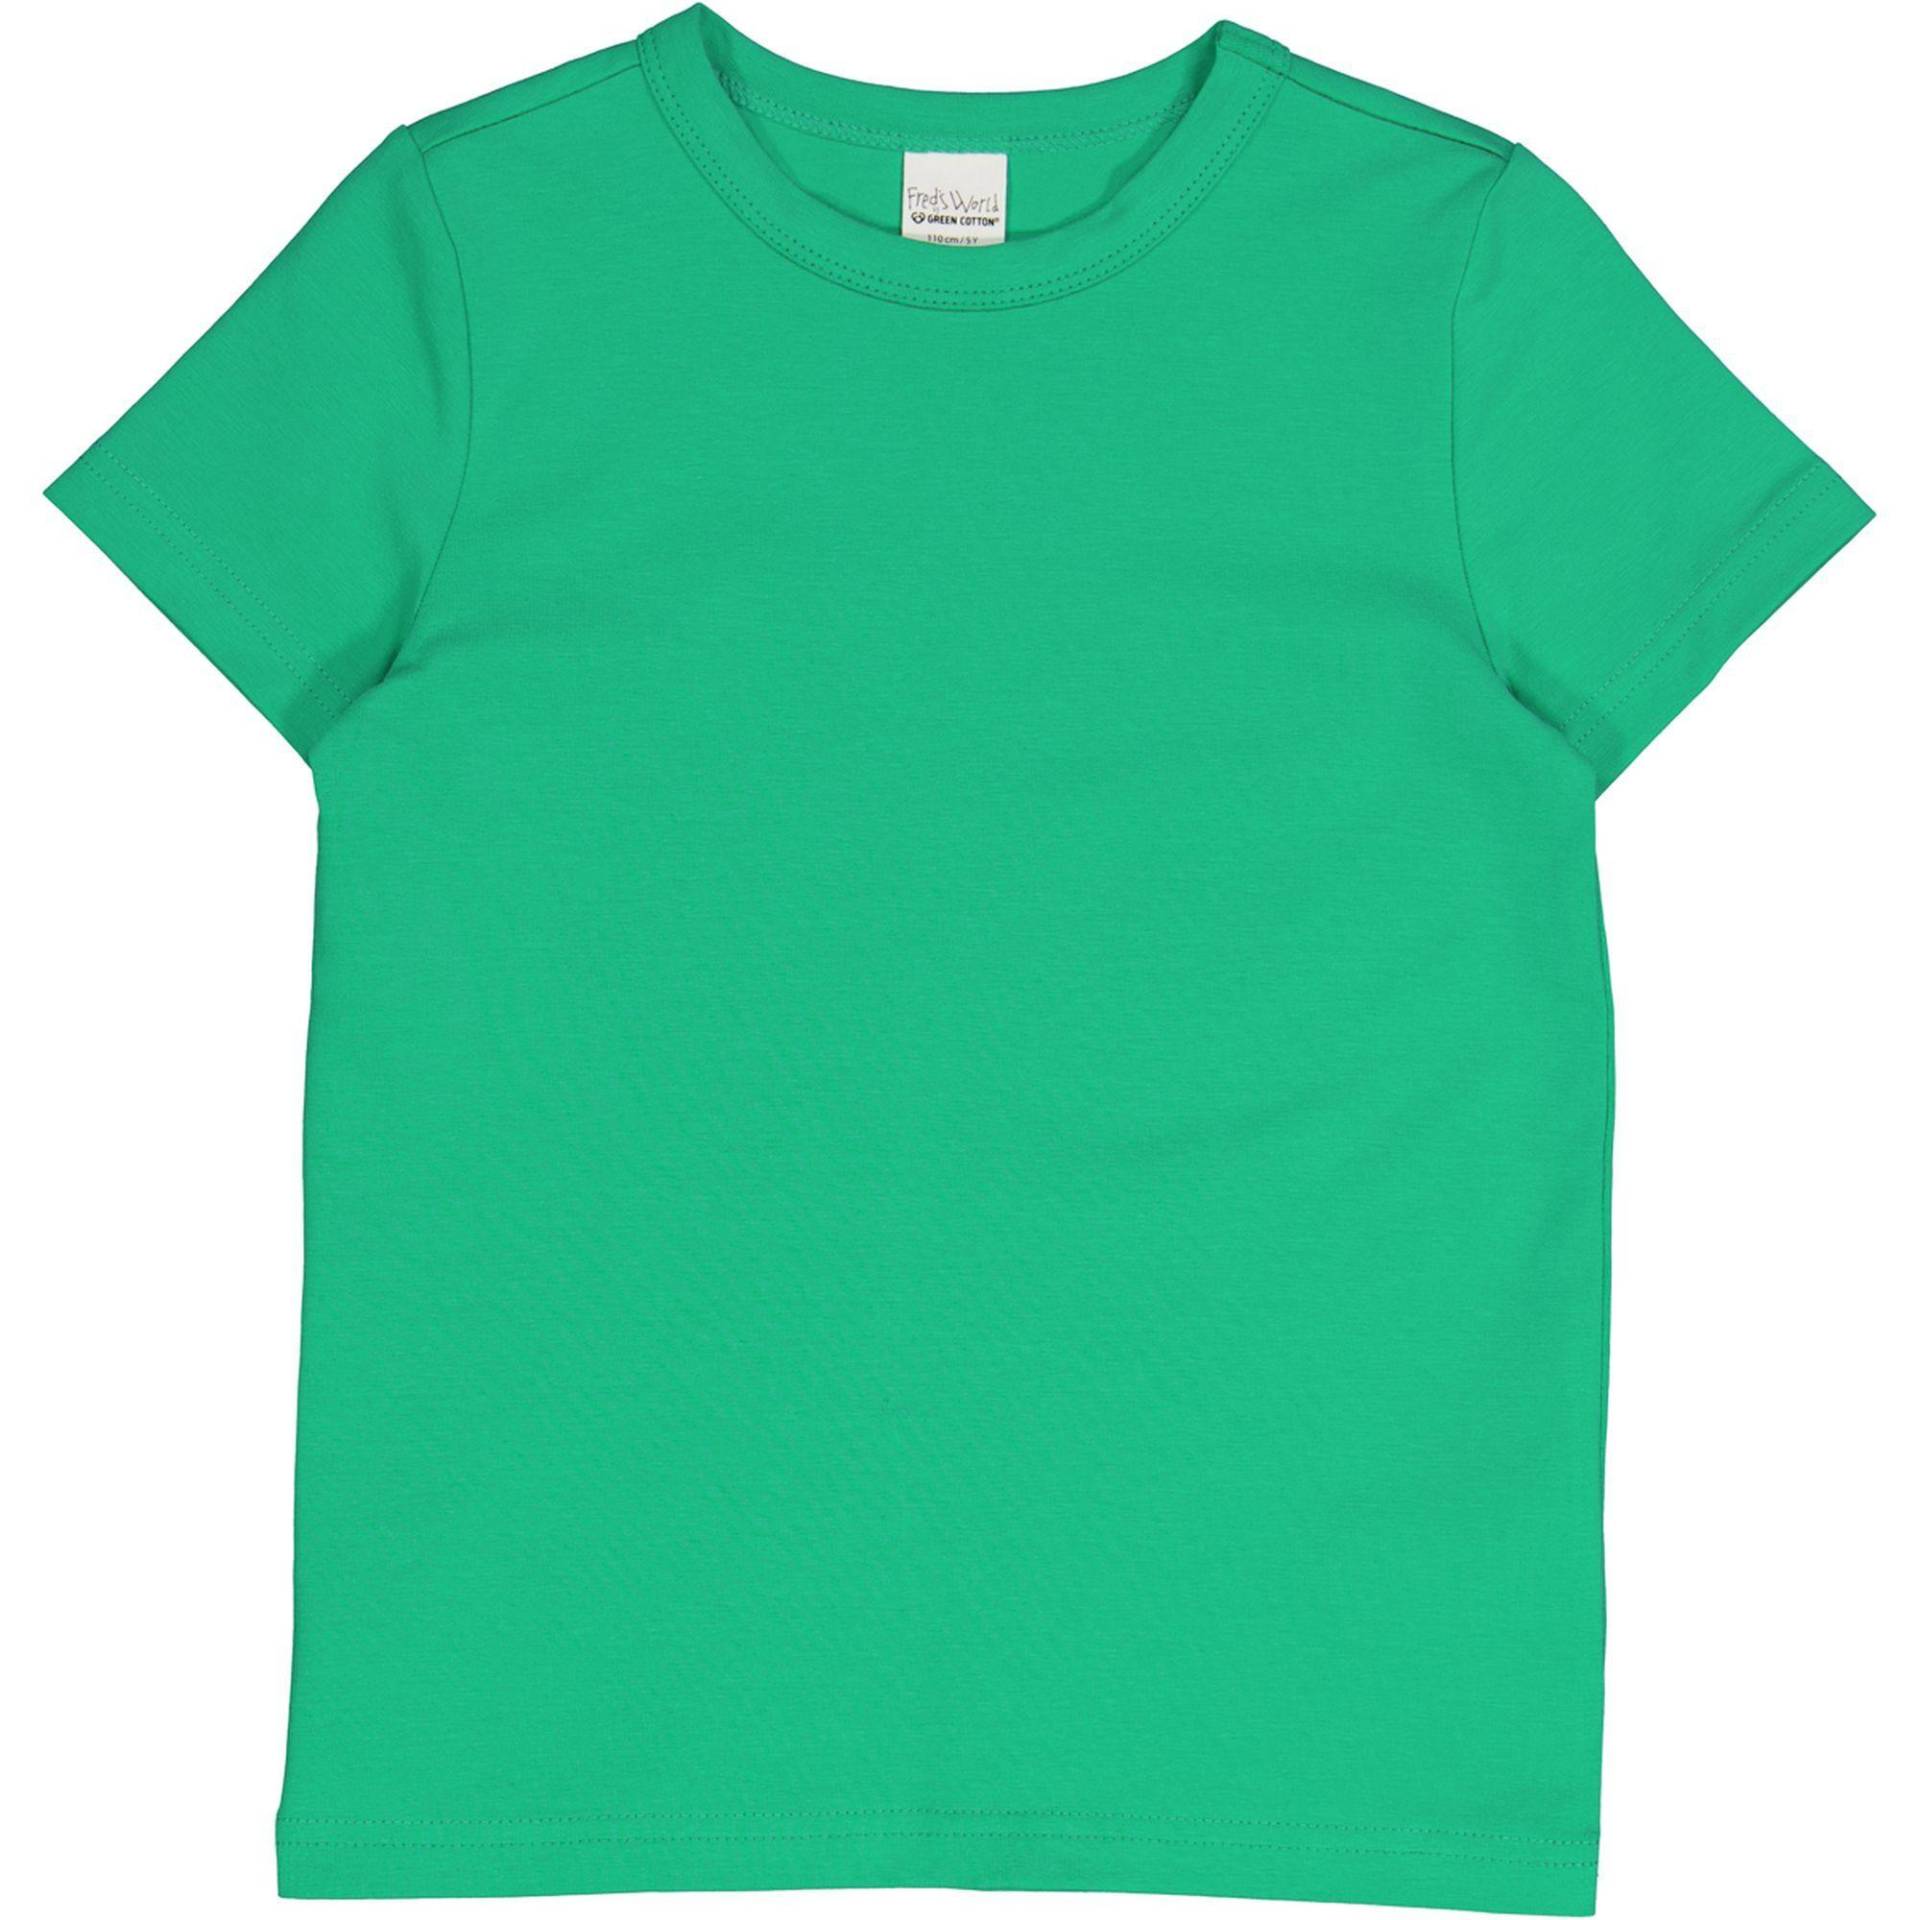 T-shirt Unisex  140 von Fred`s World by Green Cotton